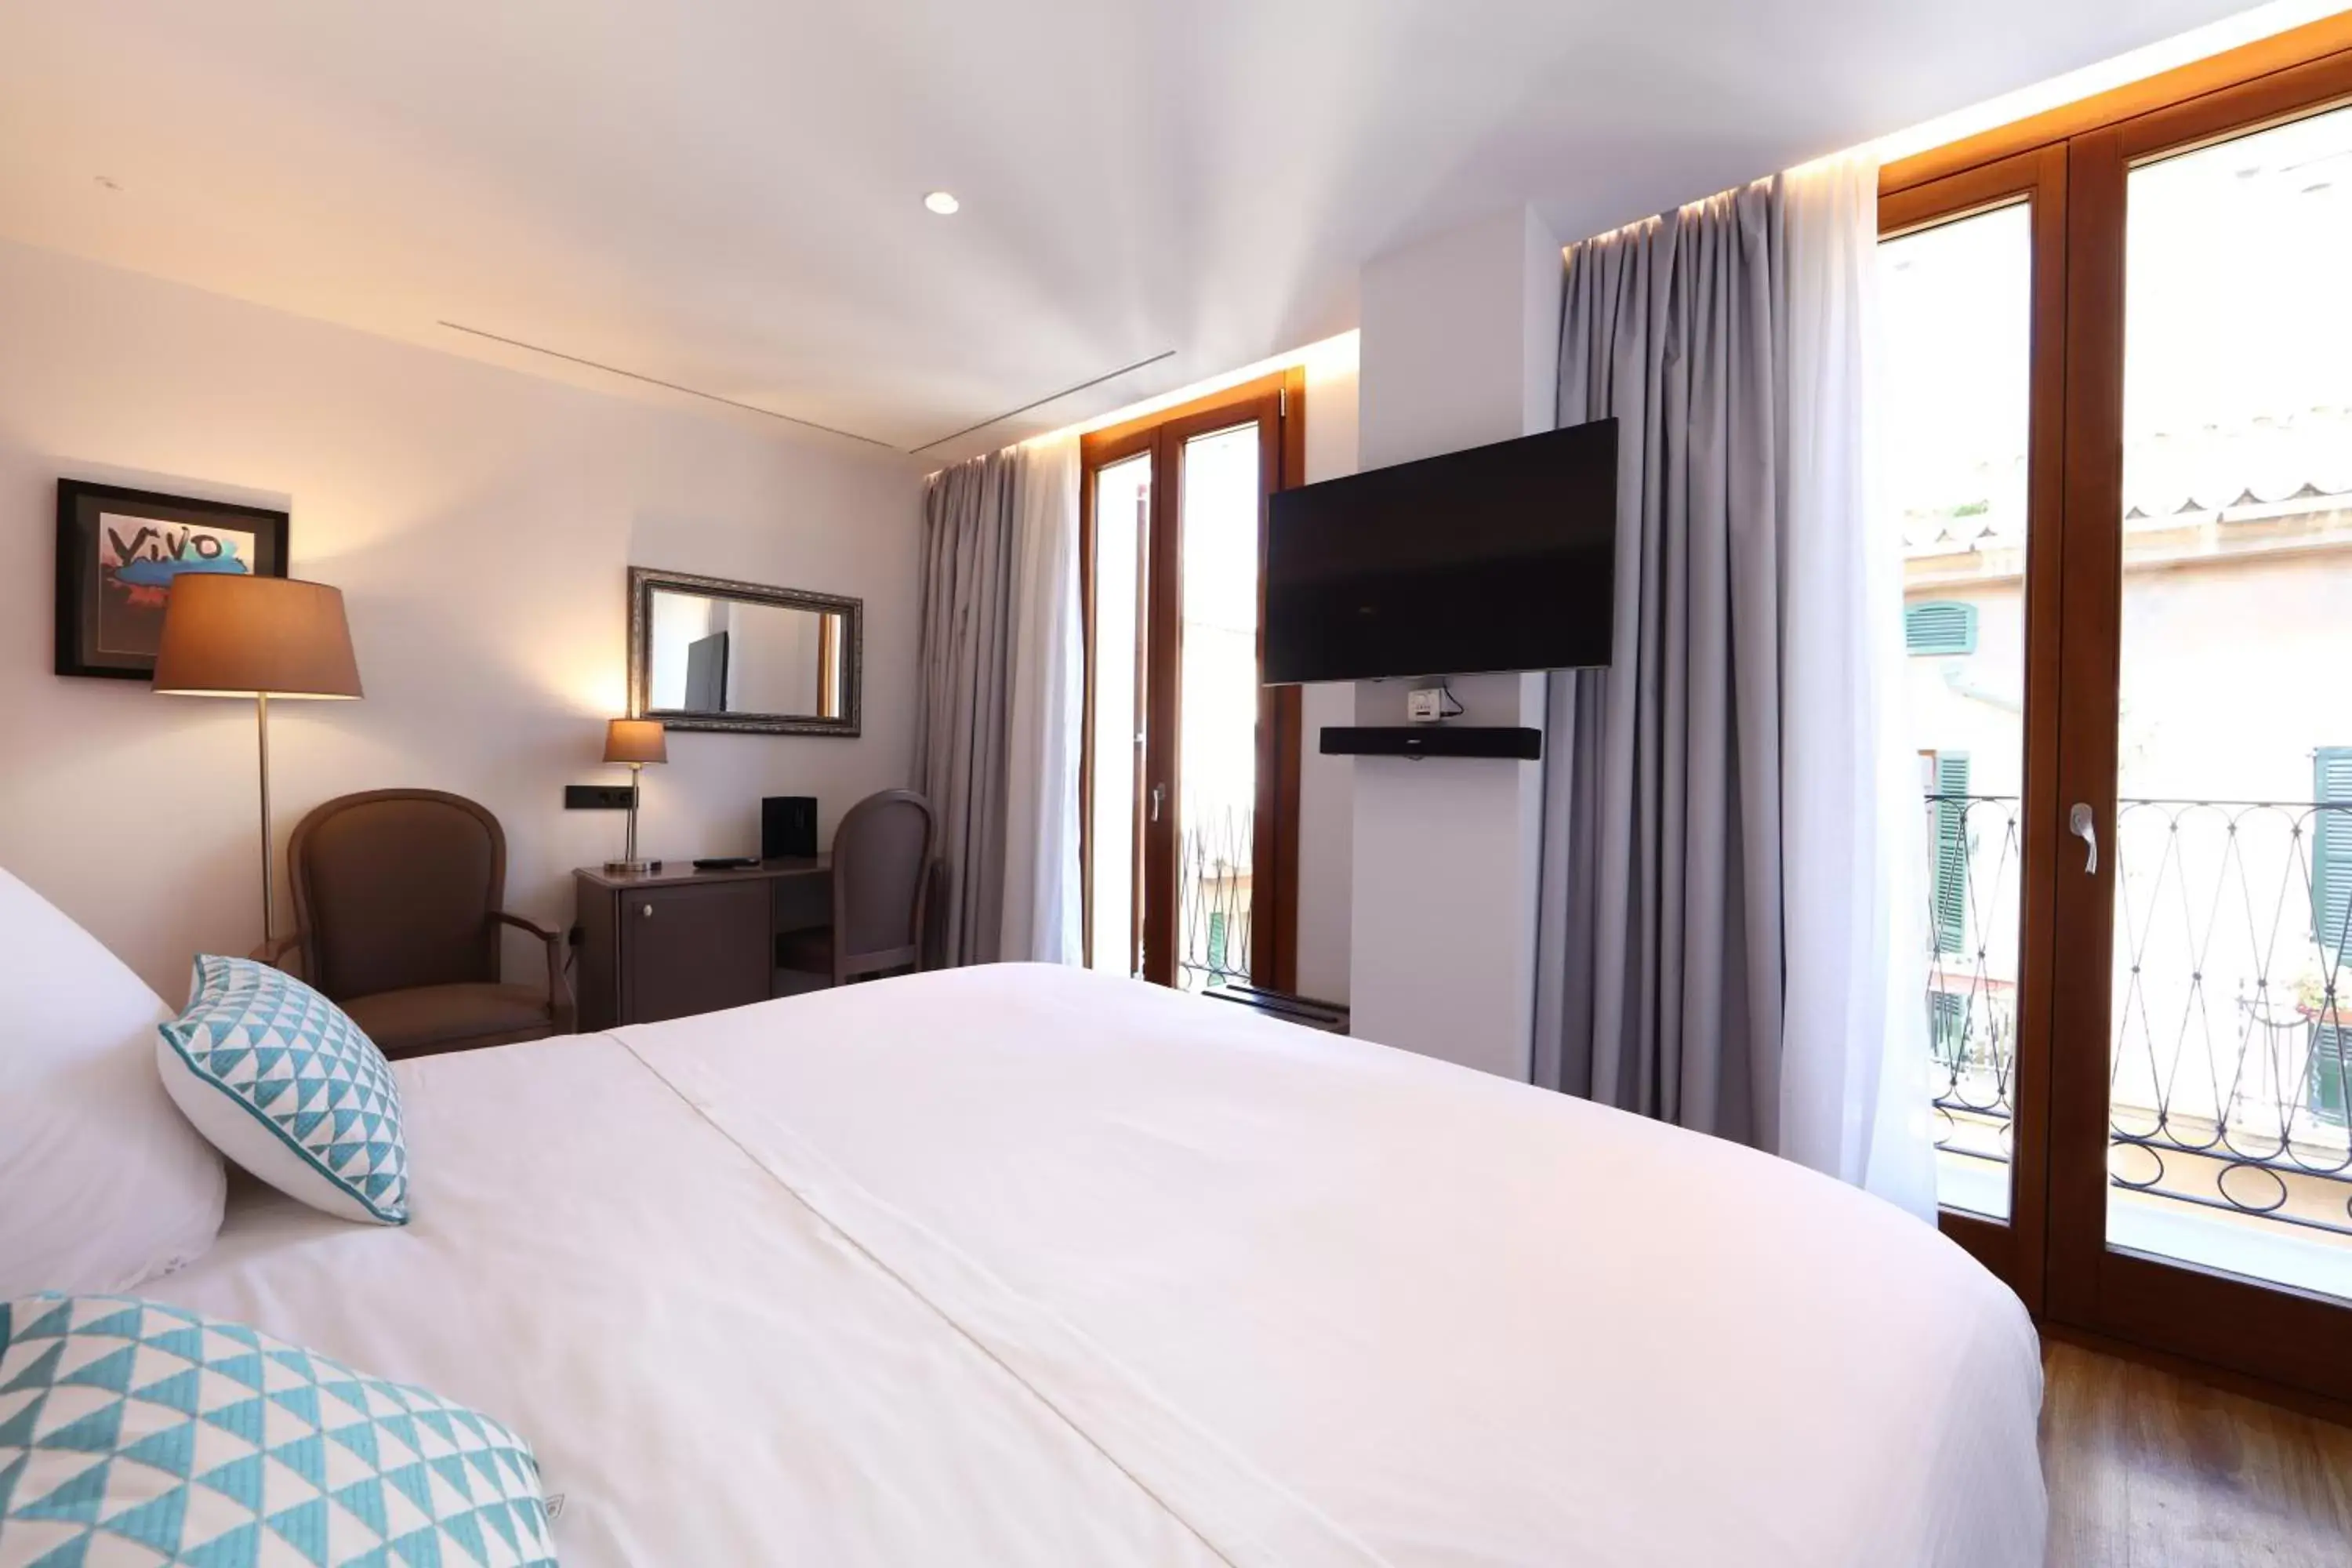 Bedroom, Bed in BO Hotel Palma